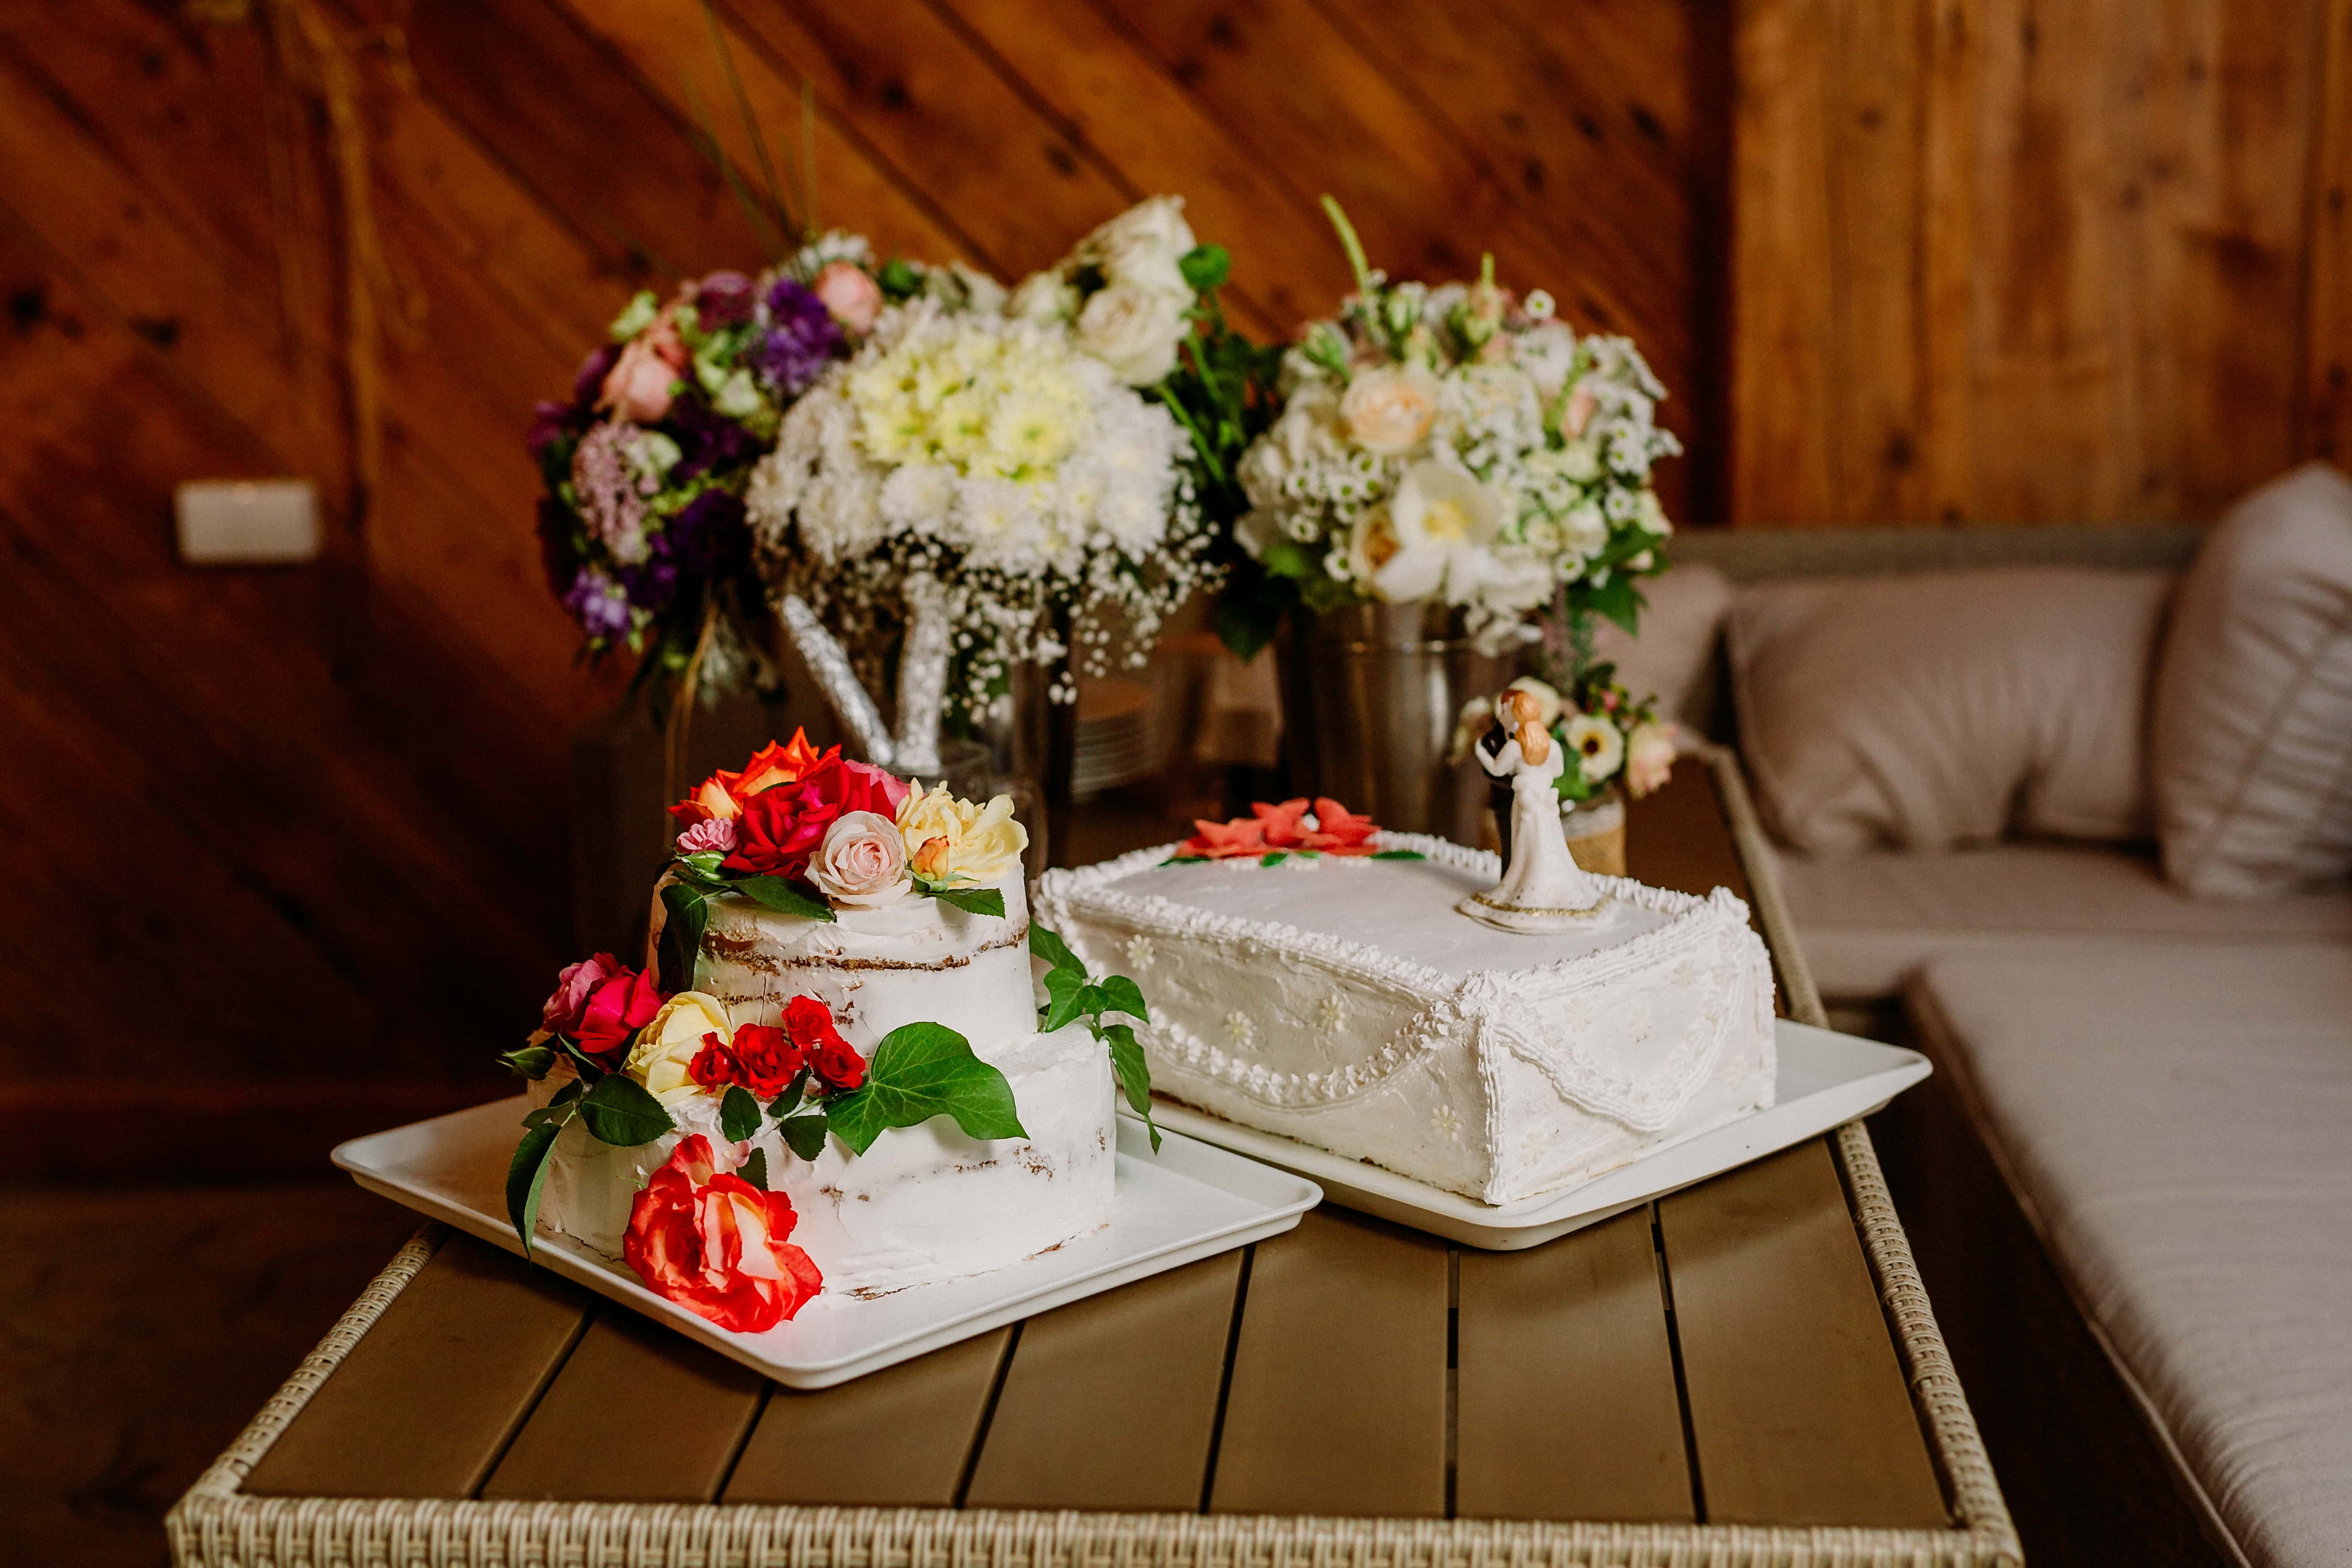 Kostenlose Bild Kuchen Hochzeitstorte Wohnzimmer Tabelle Sofa Blumenstrauss Anordnung Blumen Dekoration Blume